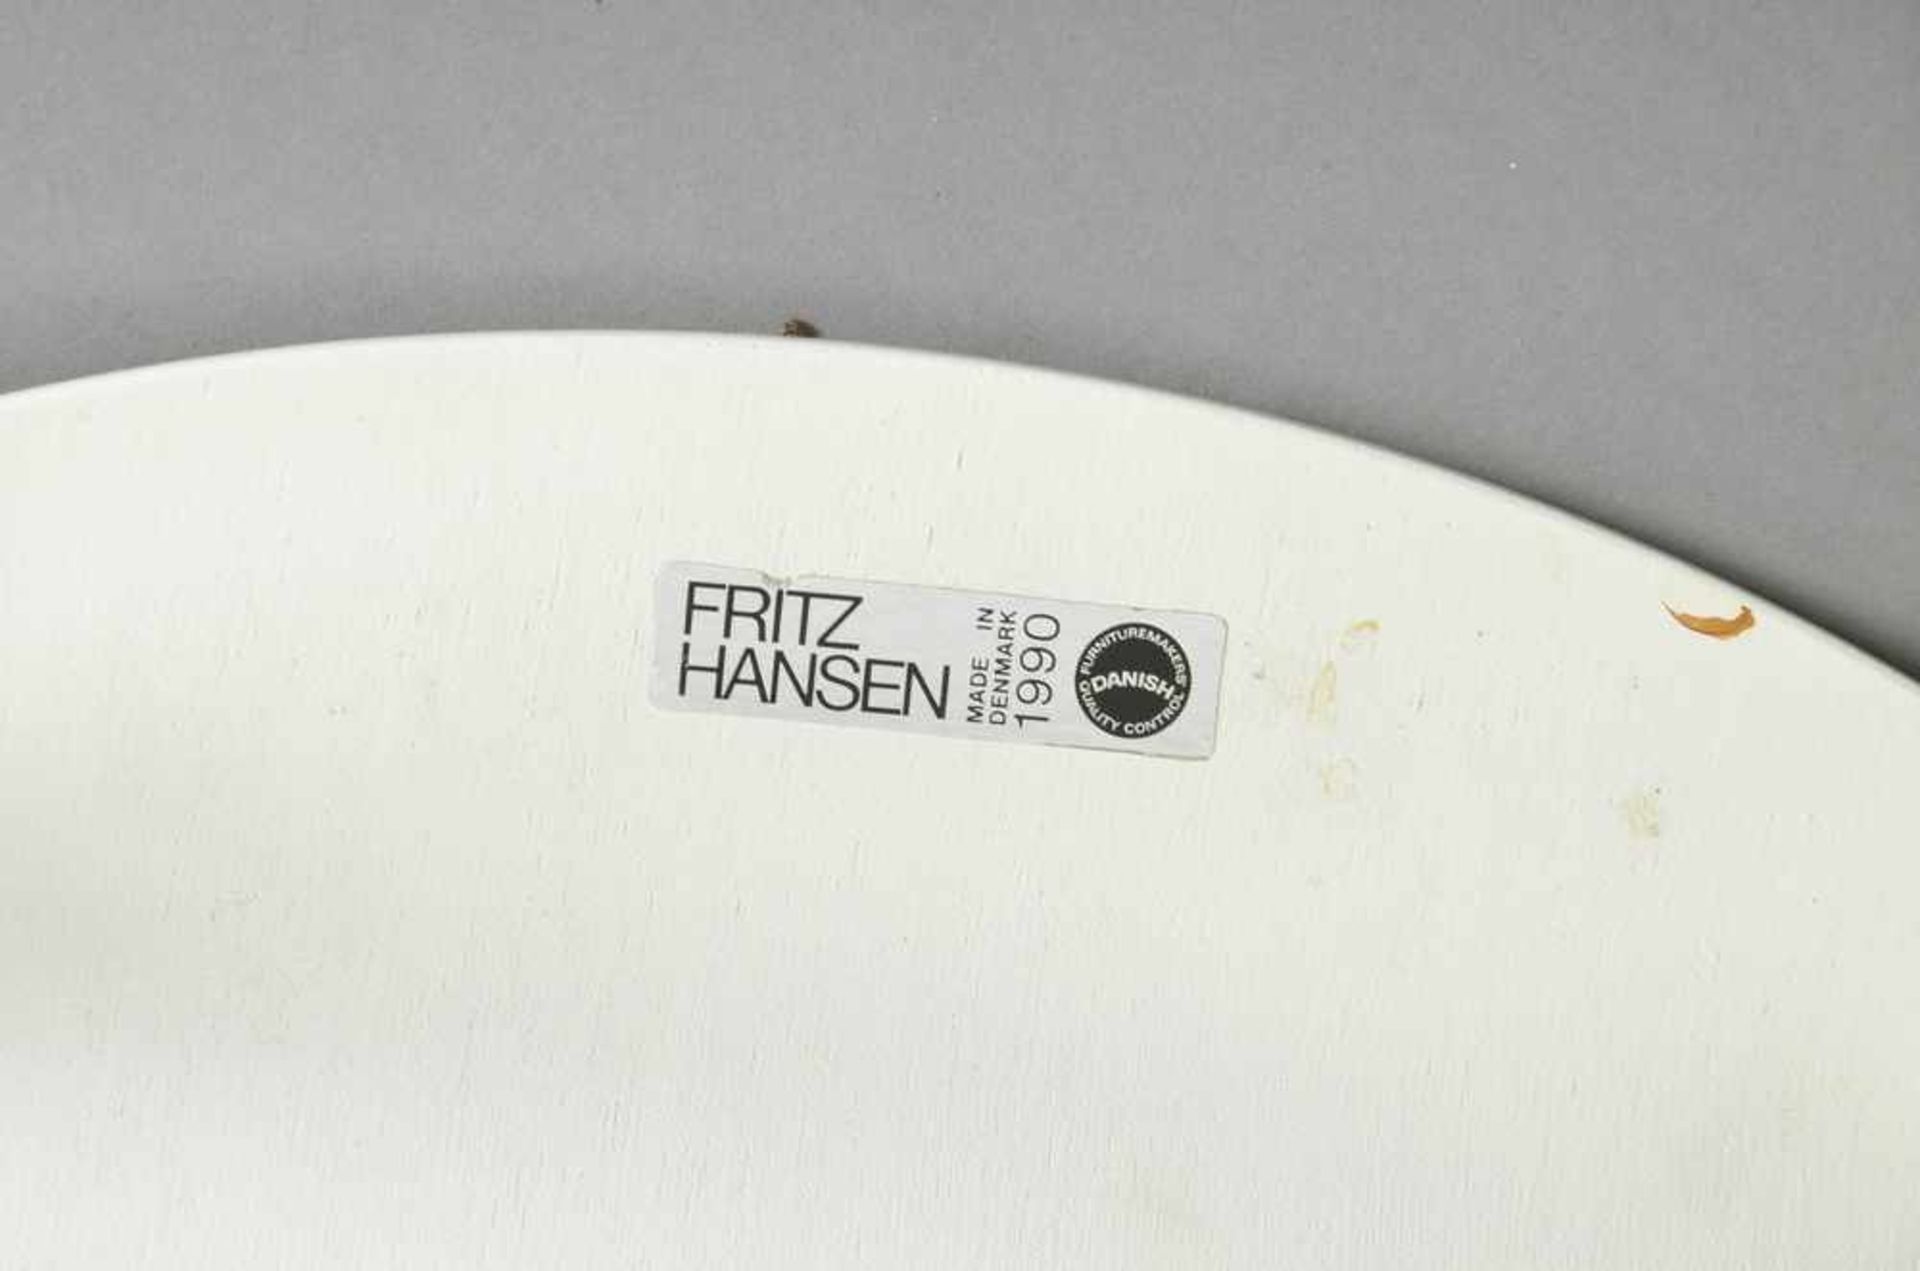 4 Stühle "Ameise", 4beinig, Entw.: Arne Jacobsen für Fritz Hansen, weiß/Chrom, H. 79/44cm - Bild 2 aus 3